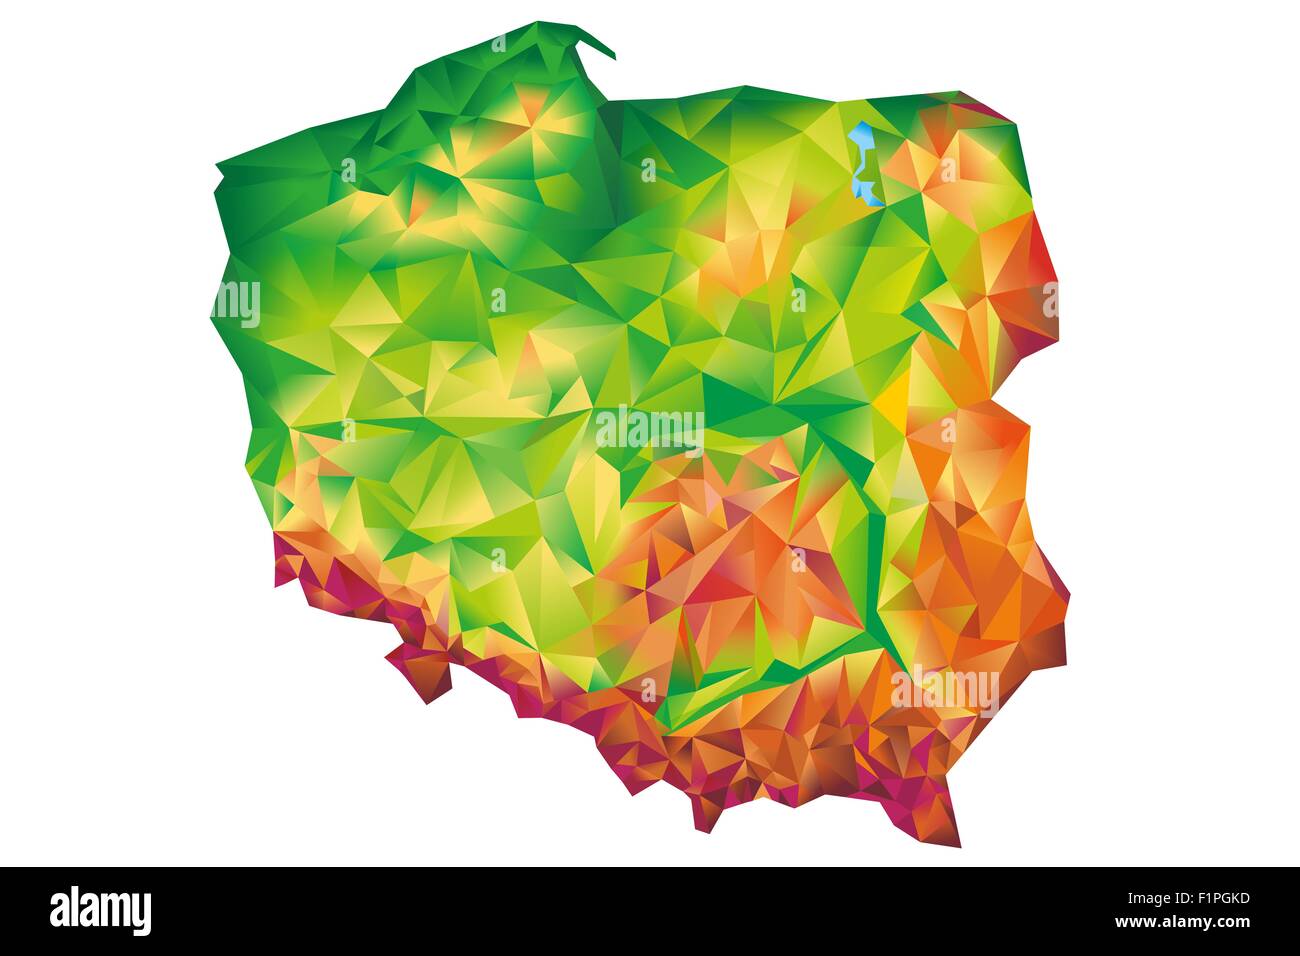 Pologne Carte géométrique Concept illustration isolé sur fond blanc. La Pologne, l'Europe. Banque D'Images